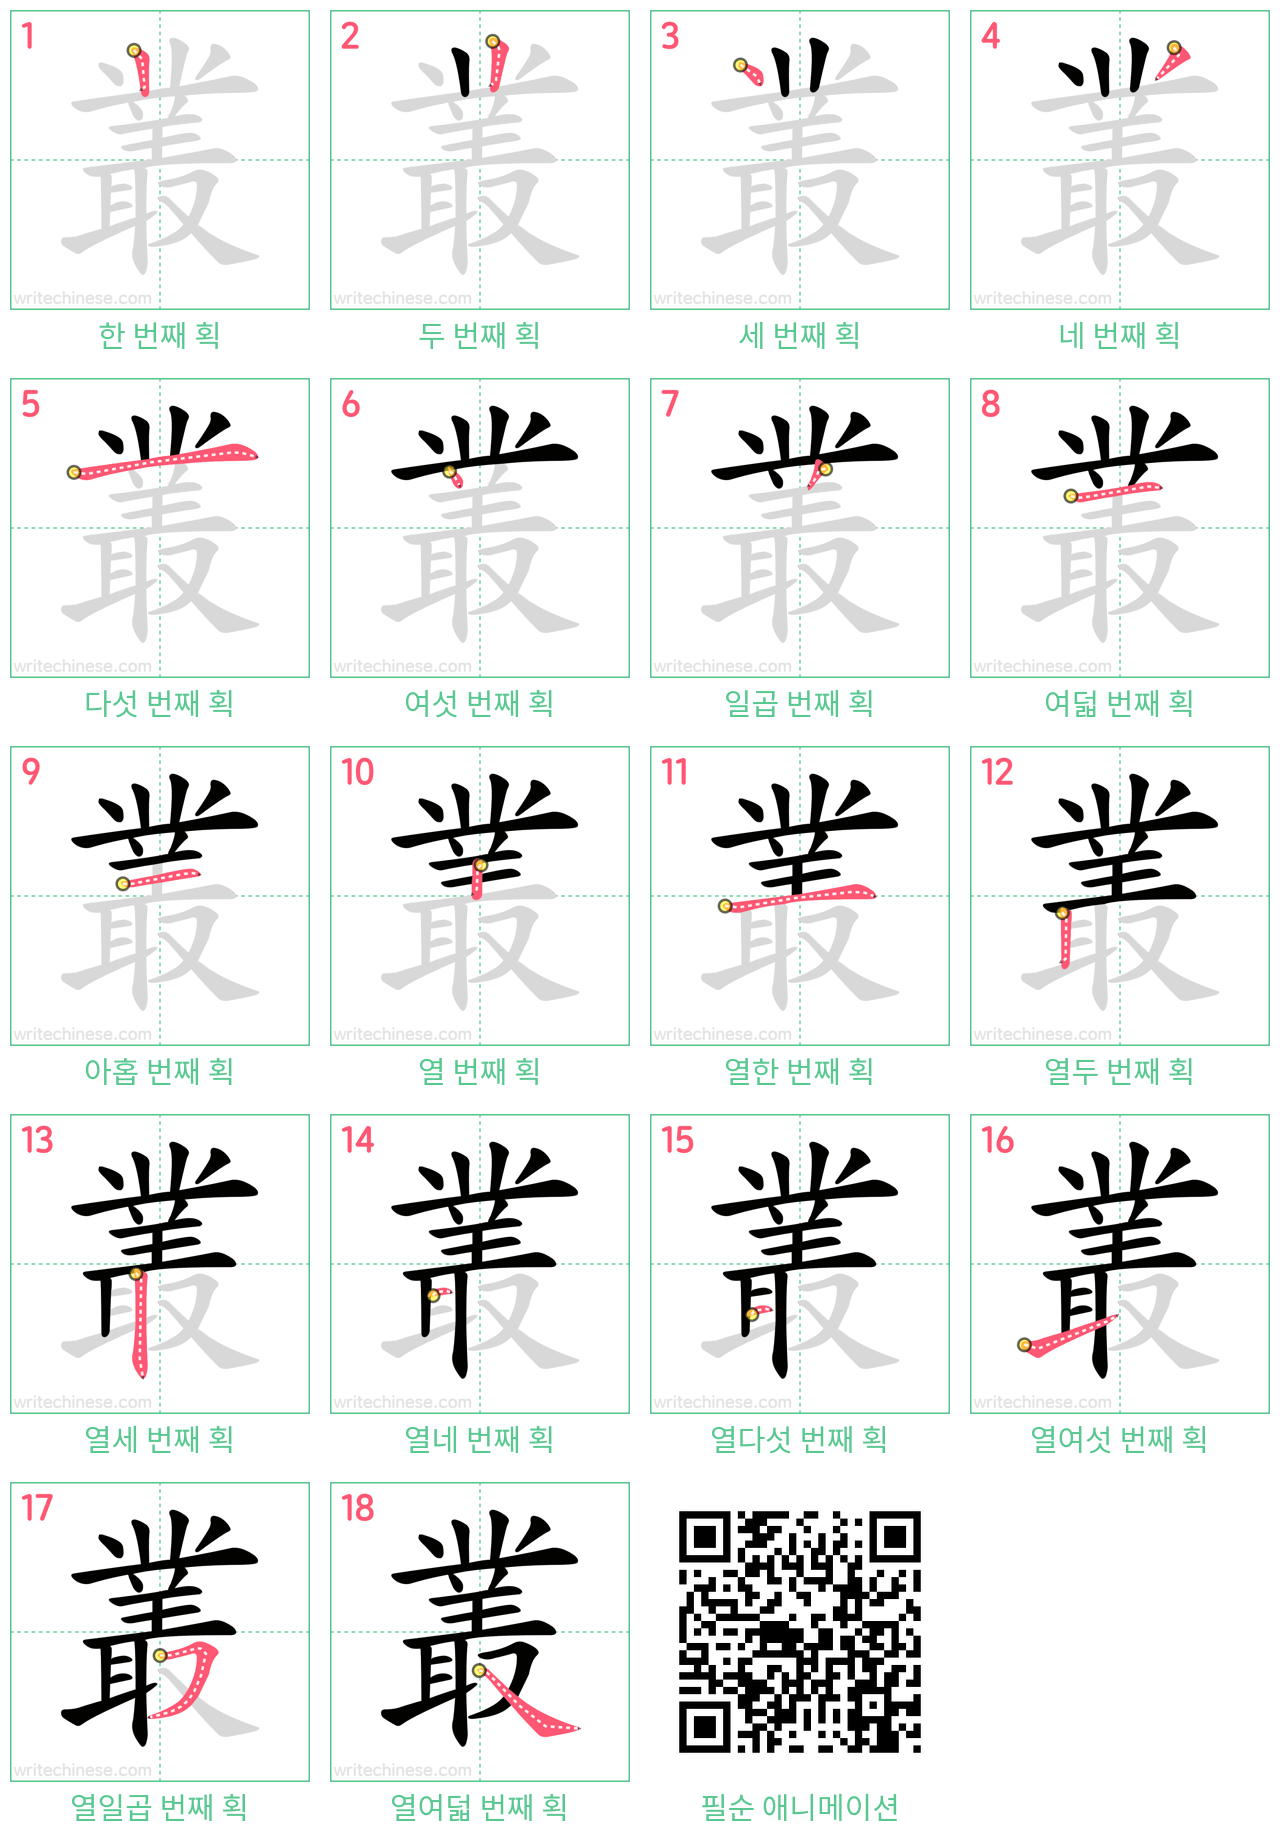 叢 step-by-step stroke order diagrams